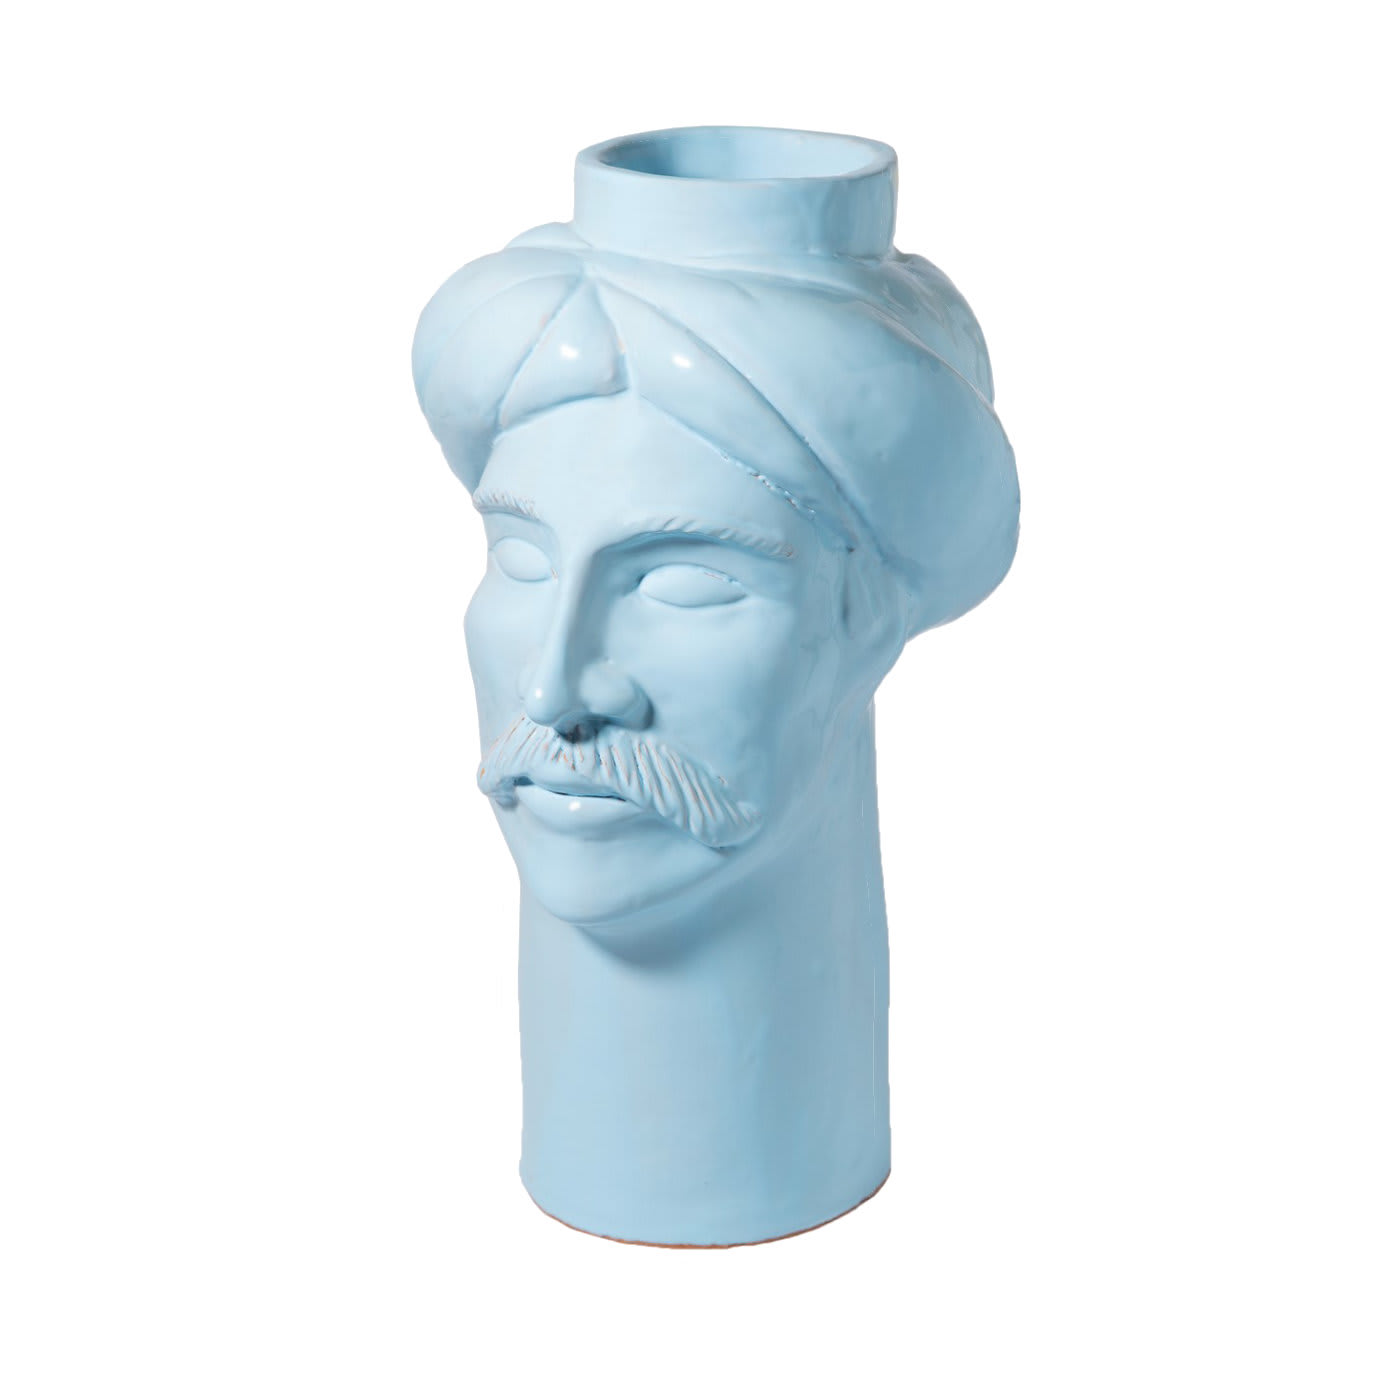 Solimano Light Blue Vase - Crita Ceramiche